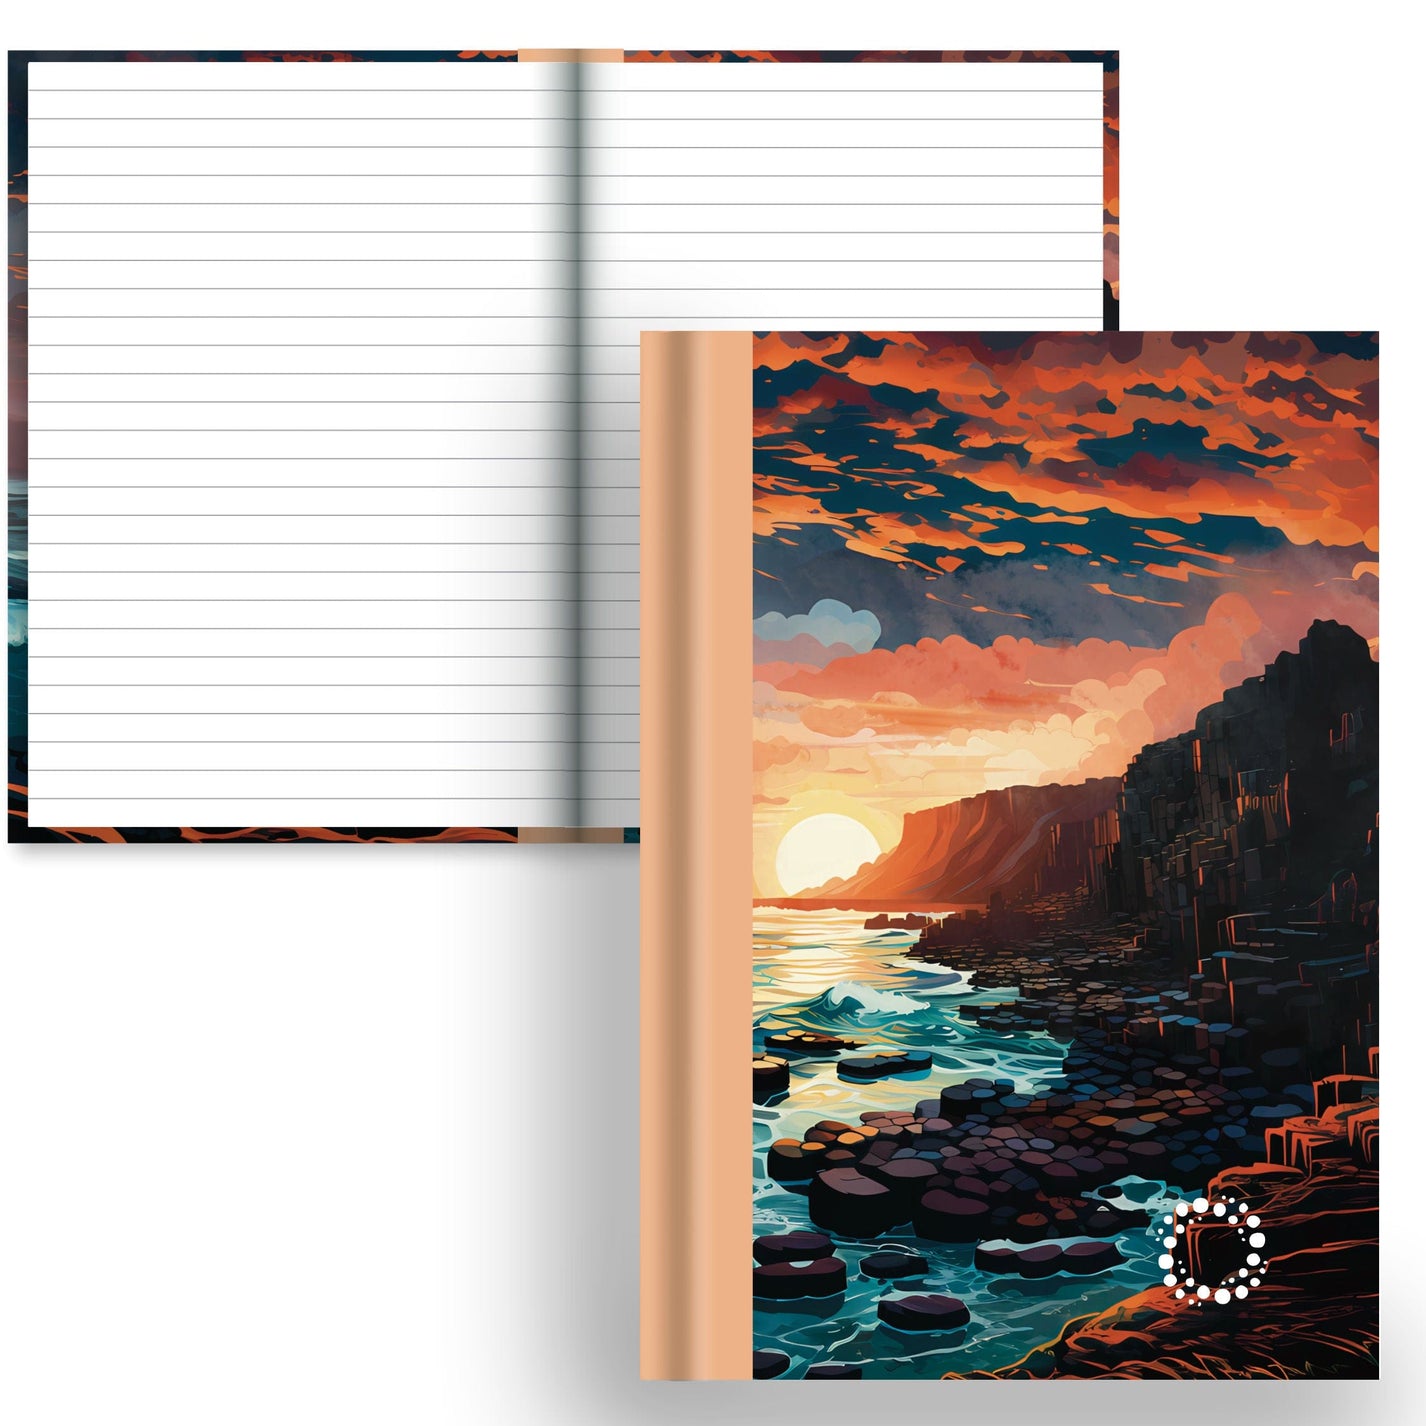 DayDot Journals A5 Notebook Lined Paper Causeway - A5 Hardback Notebook